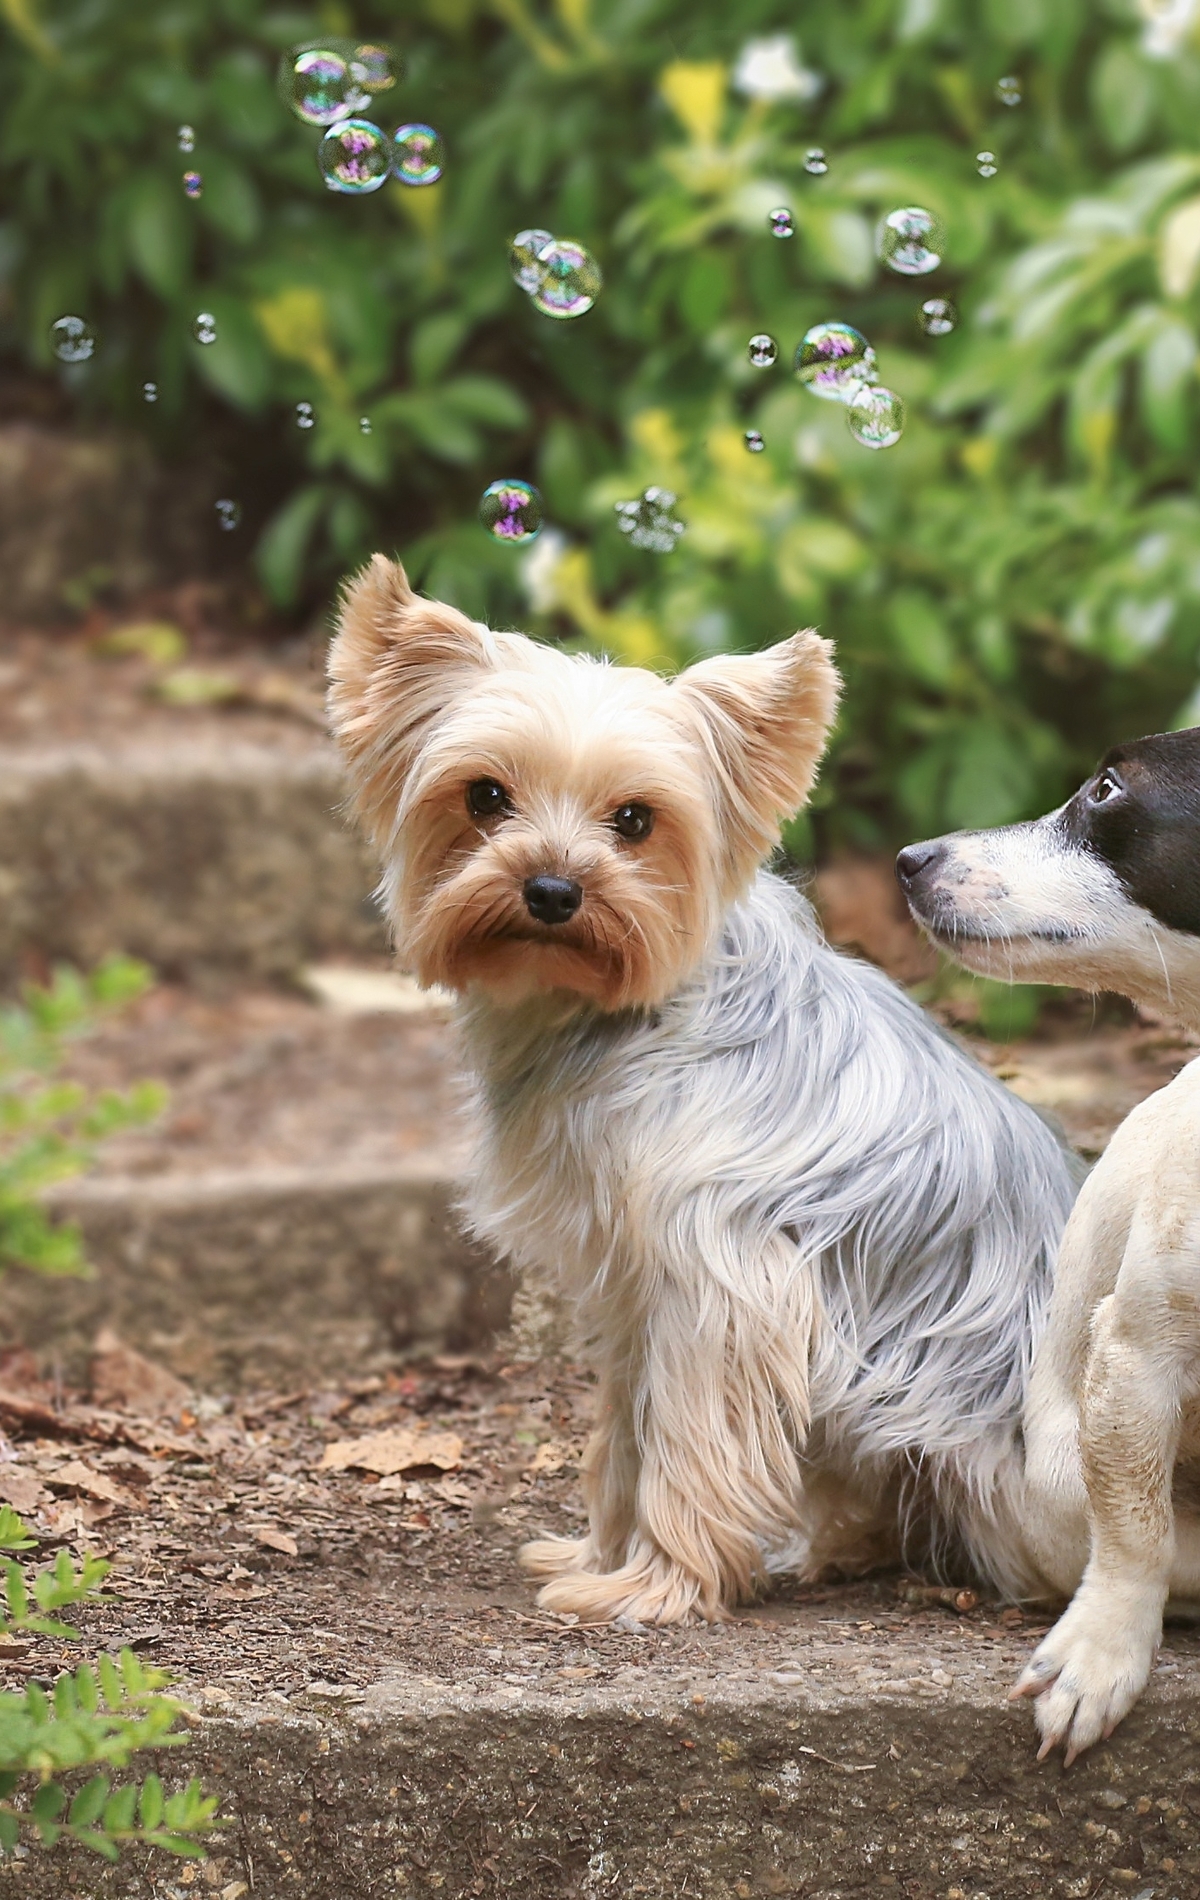 Картинка: Собаки, Dogs, пара, две, ступеньки, сидят, мыльные пузыри, Bubbles, зелень, йоркширский терьер